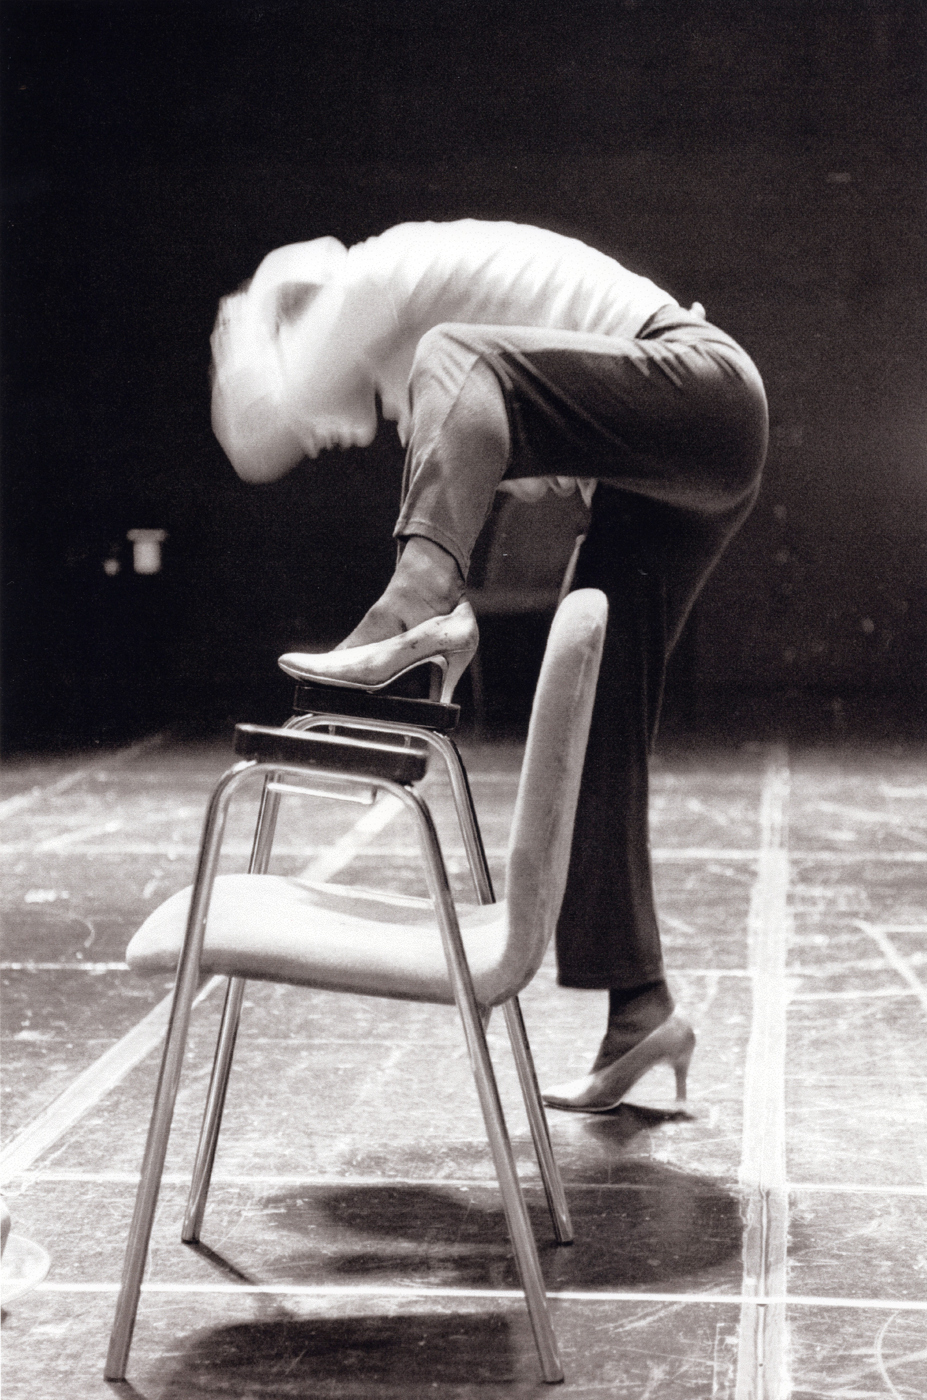 Koreografutbildningen 1998-2001, En dansare och stol, Danshögskolan, K1-13, Foto © Martín Fernández Long.jpg